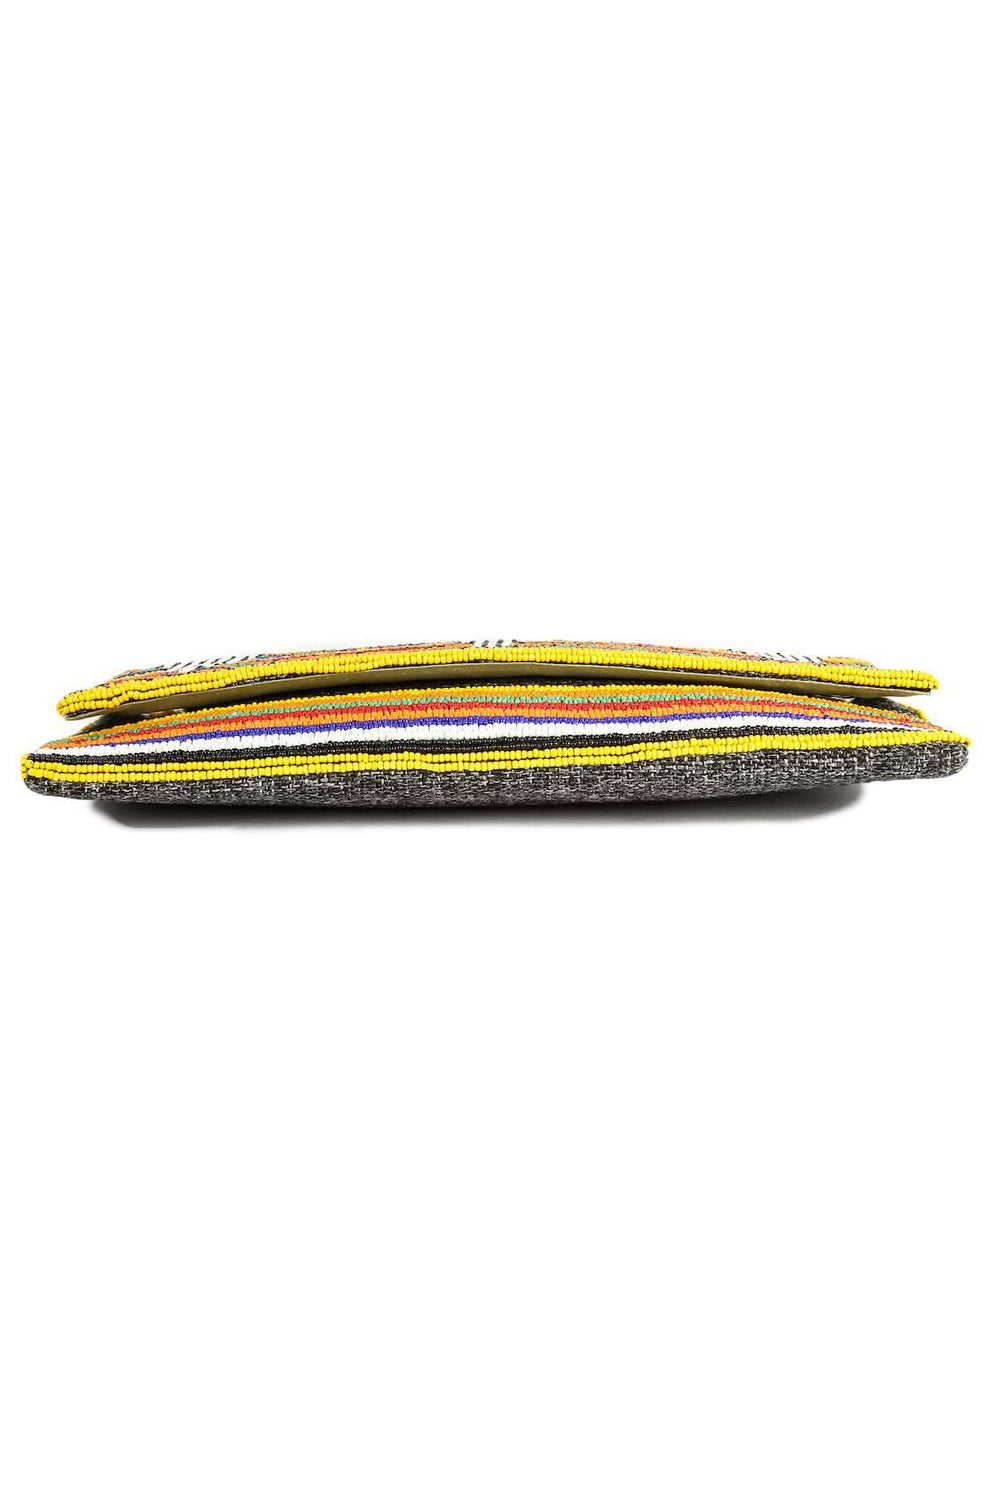 Lily Rainbow Multi Colour Beaded Handbag